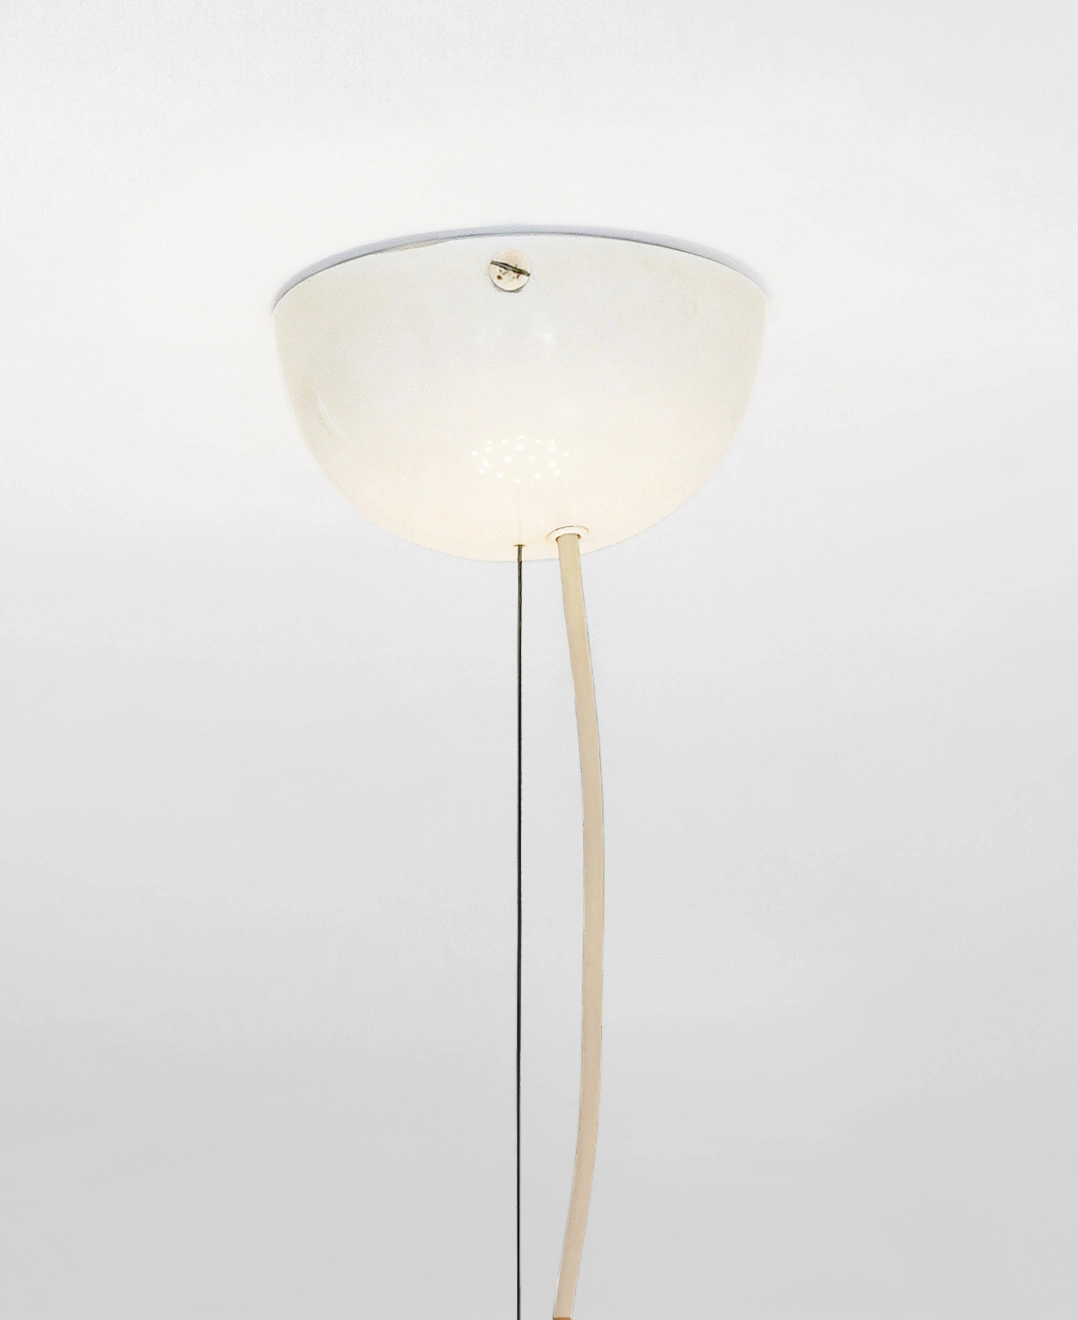 2130 - Gino Sarfatti - Pendant light - Galerie kreo